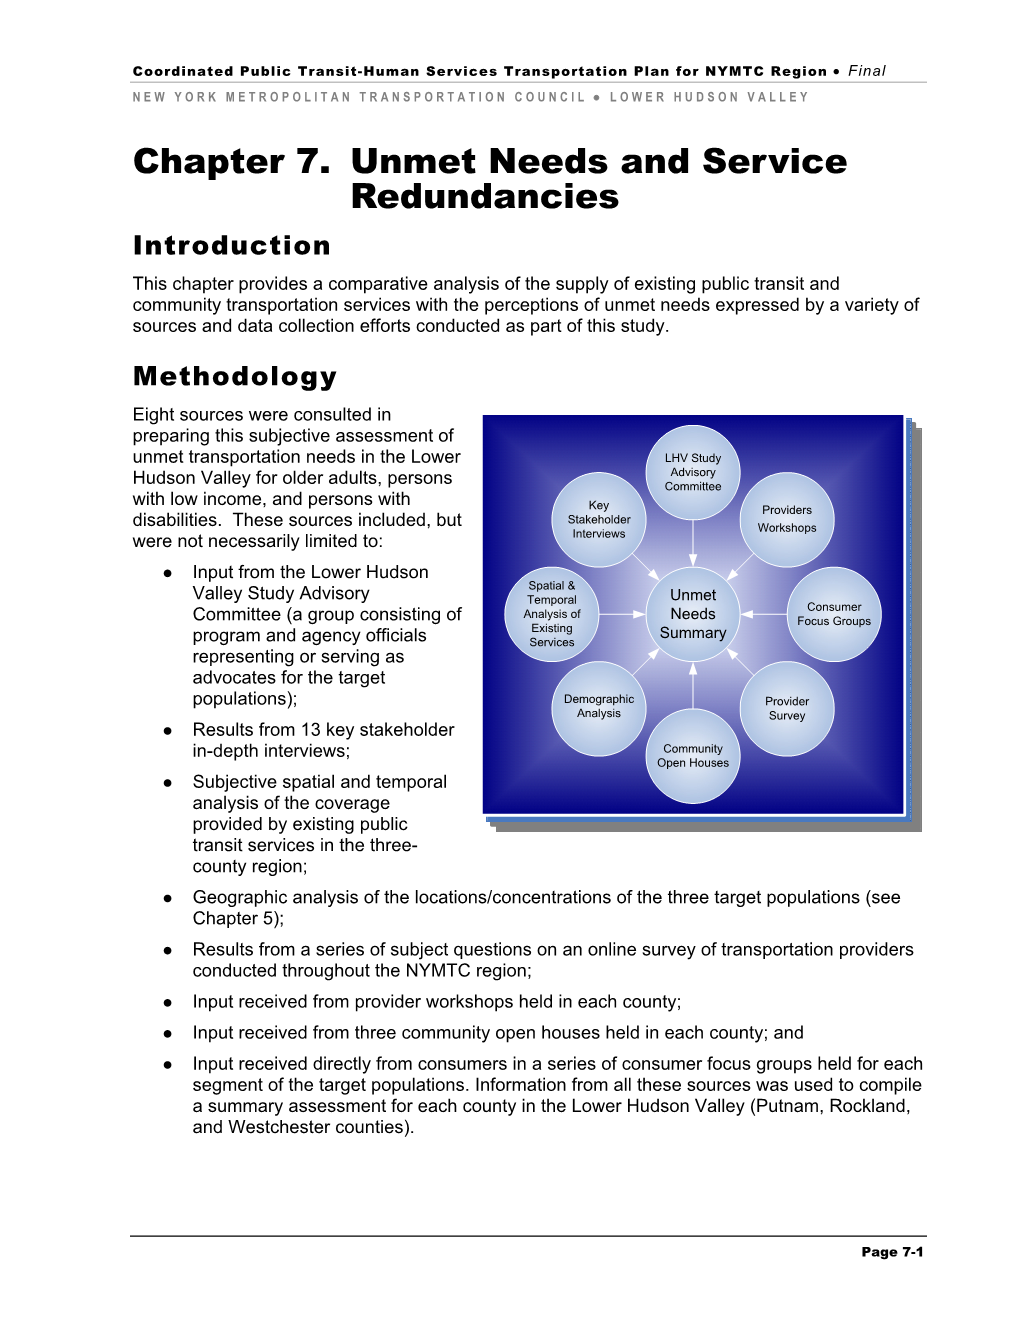 Chapter 7. Unmet Needs and Service Redundancies